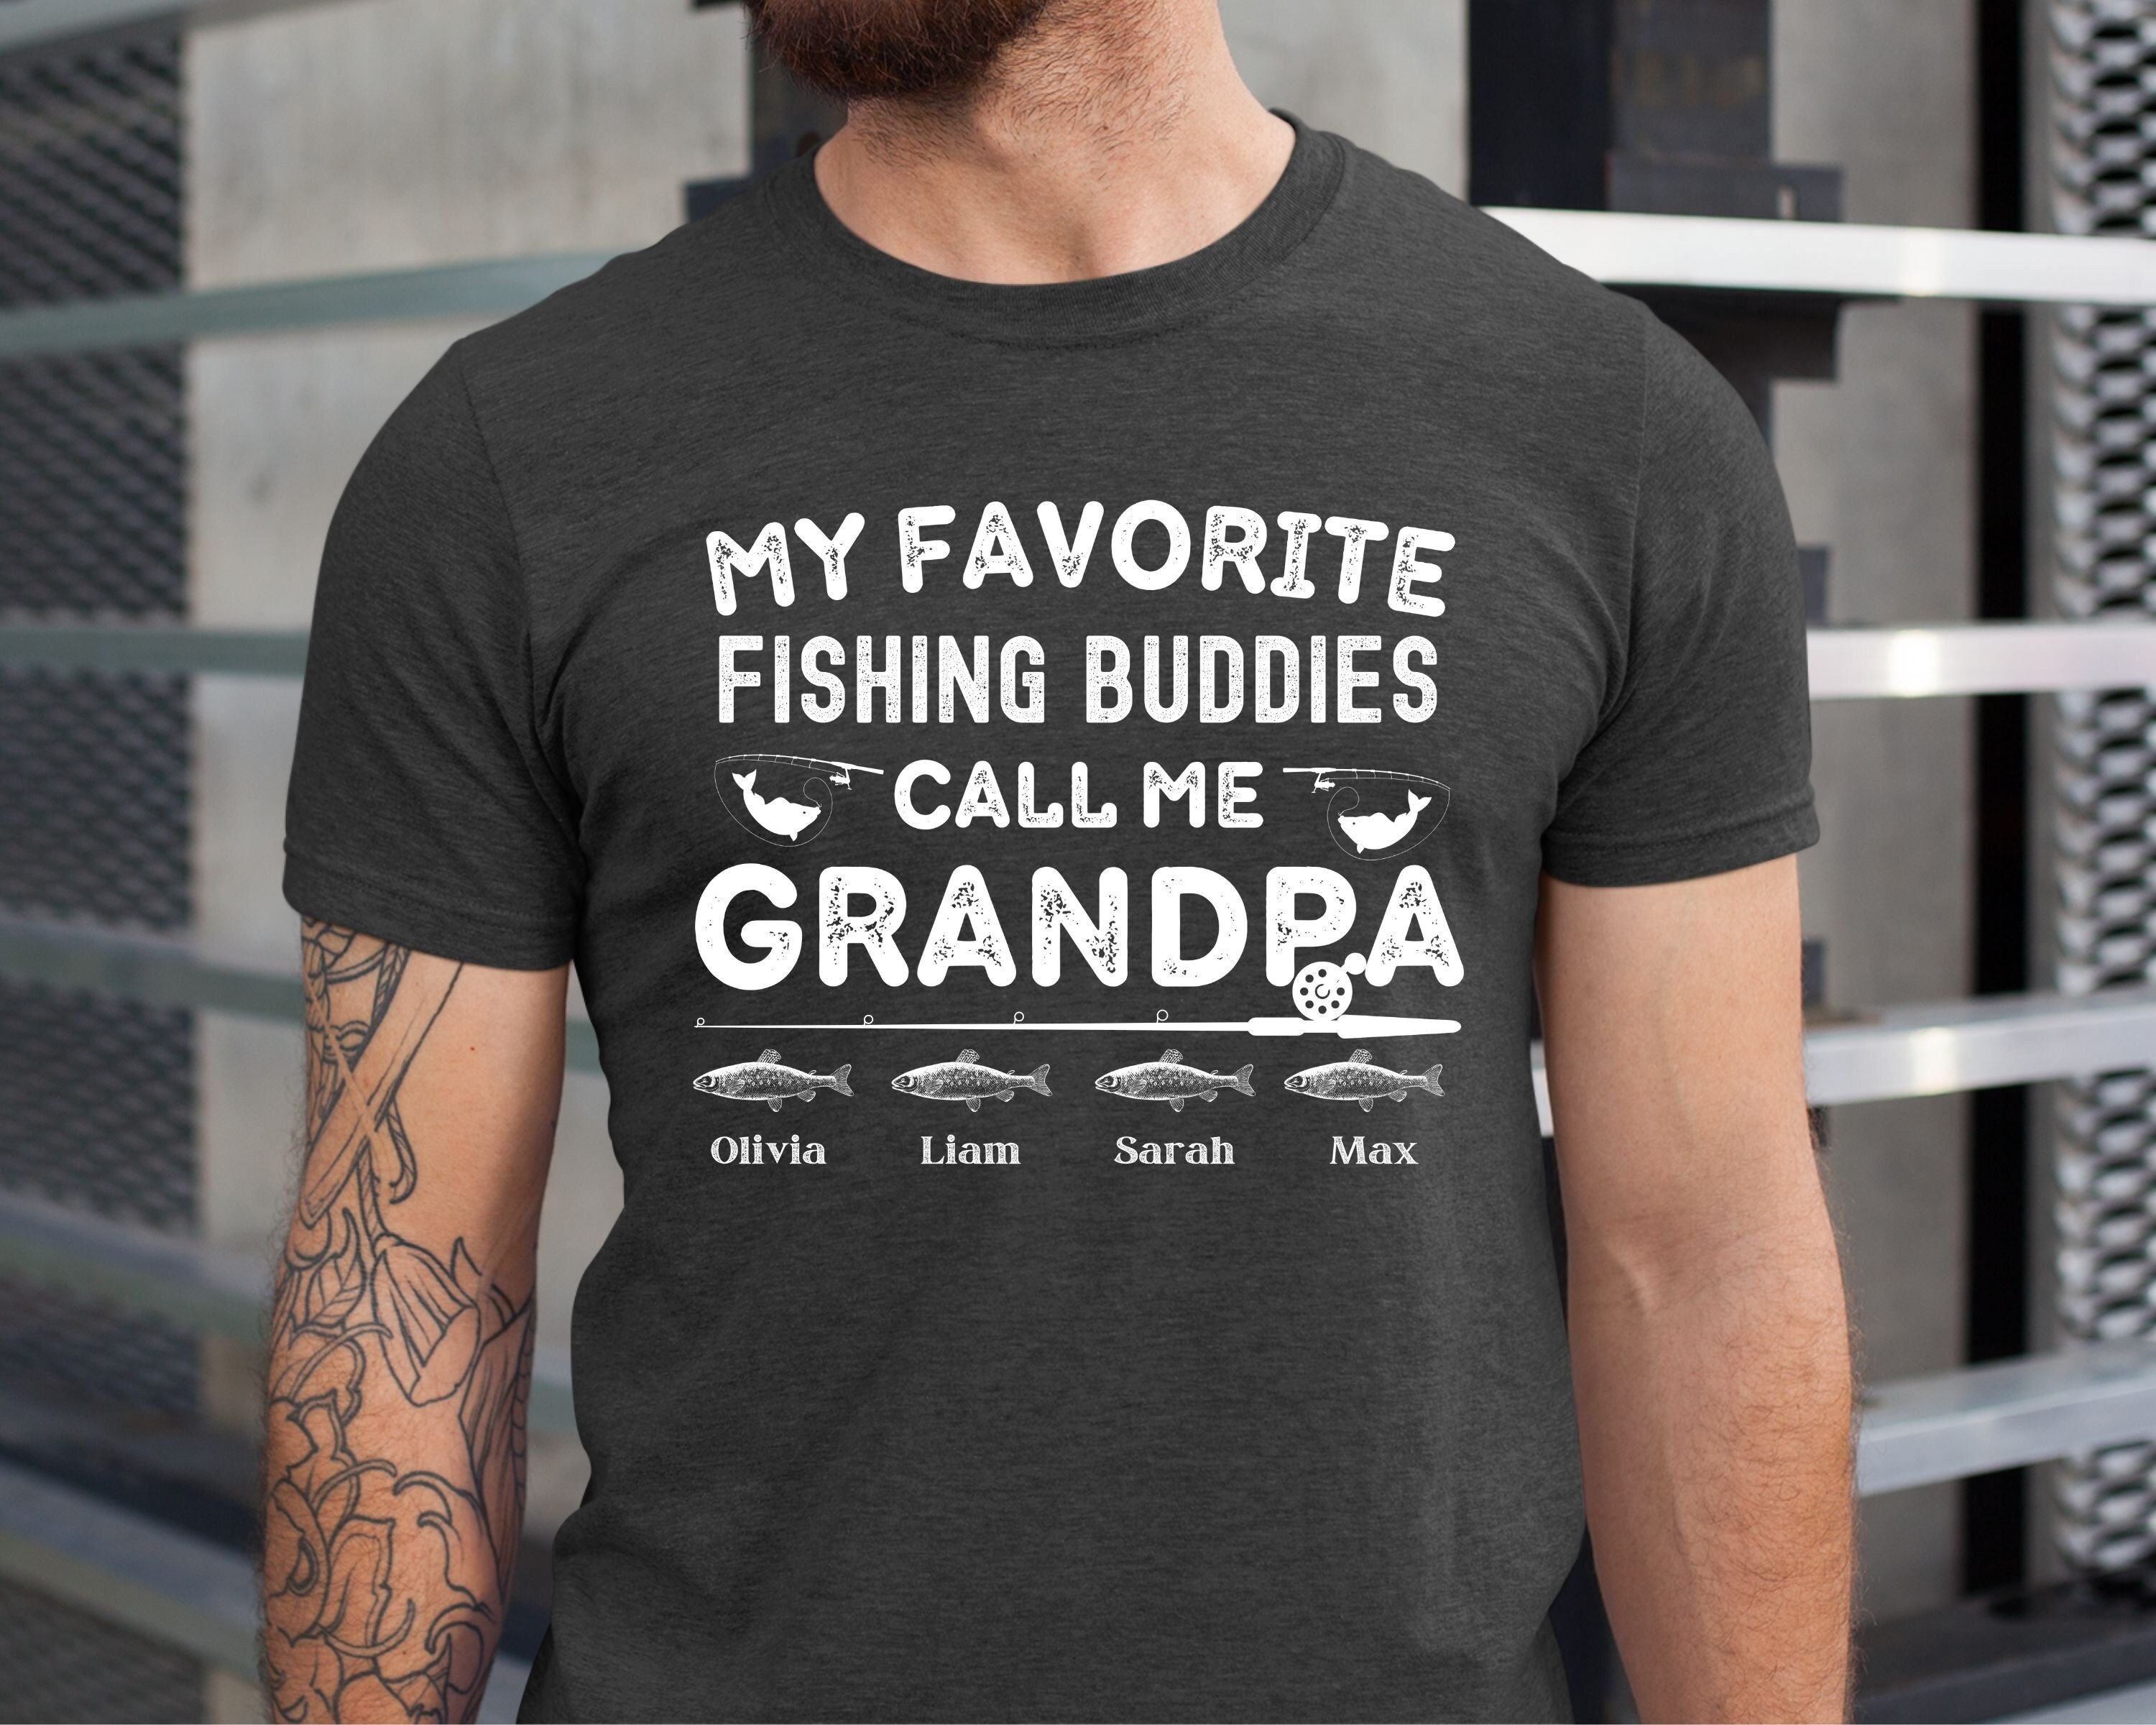 My Favorite Fishing Buddies Call Me Grandpa, Personalized Grandpa